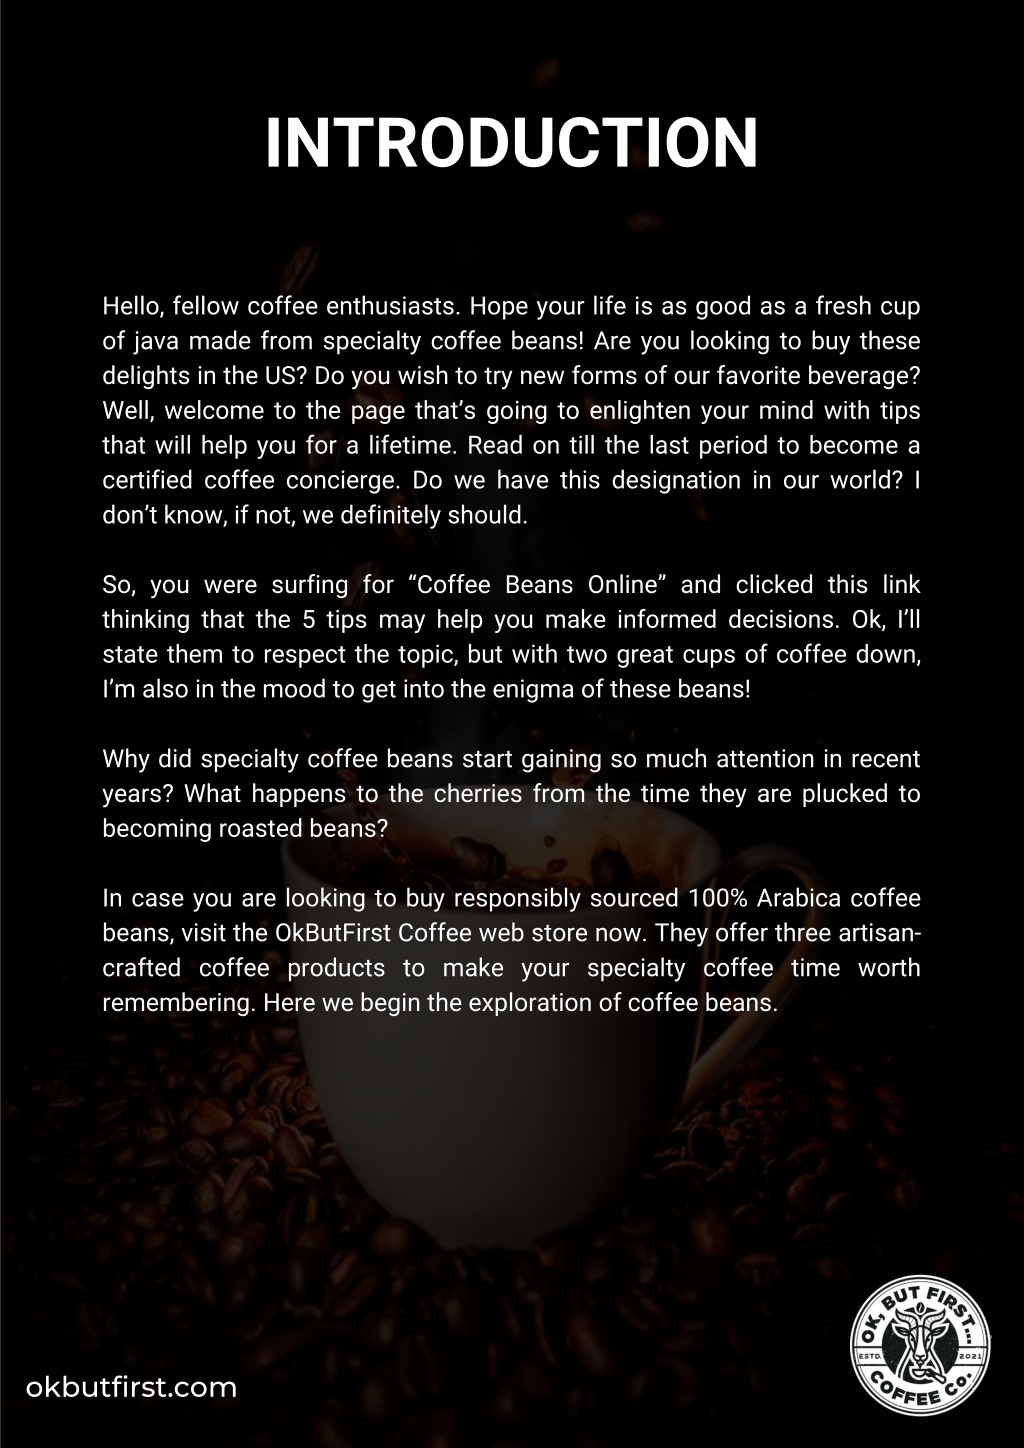 K-Supreme® Single Serve Coffee Maker